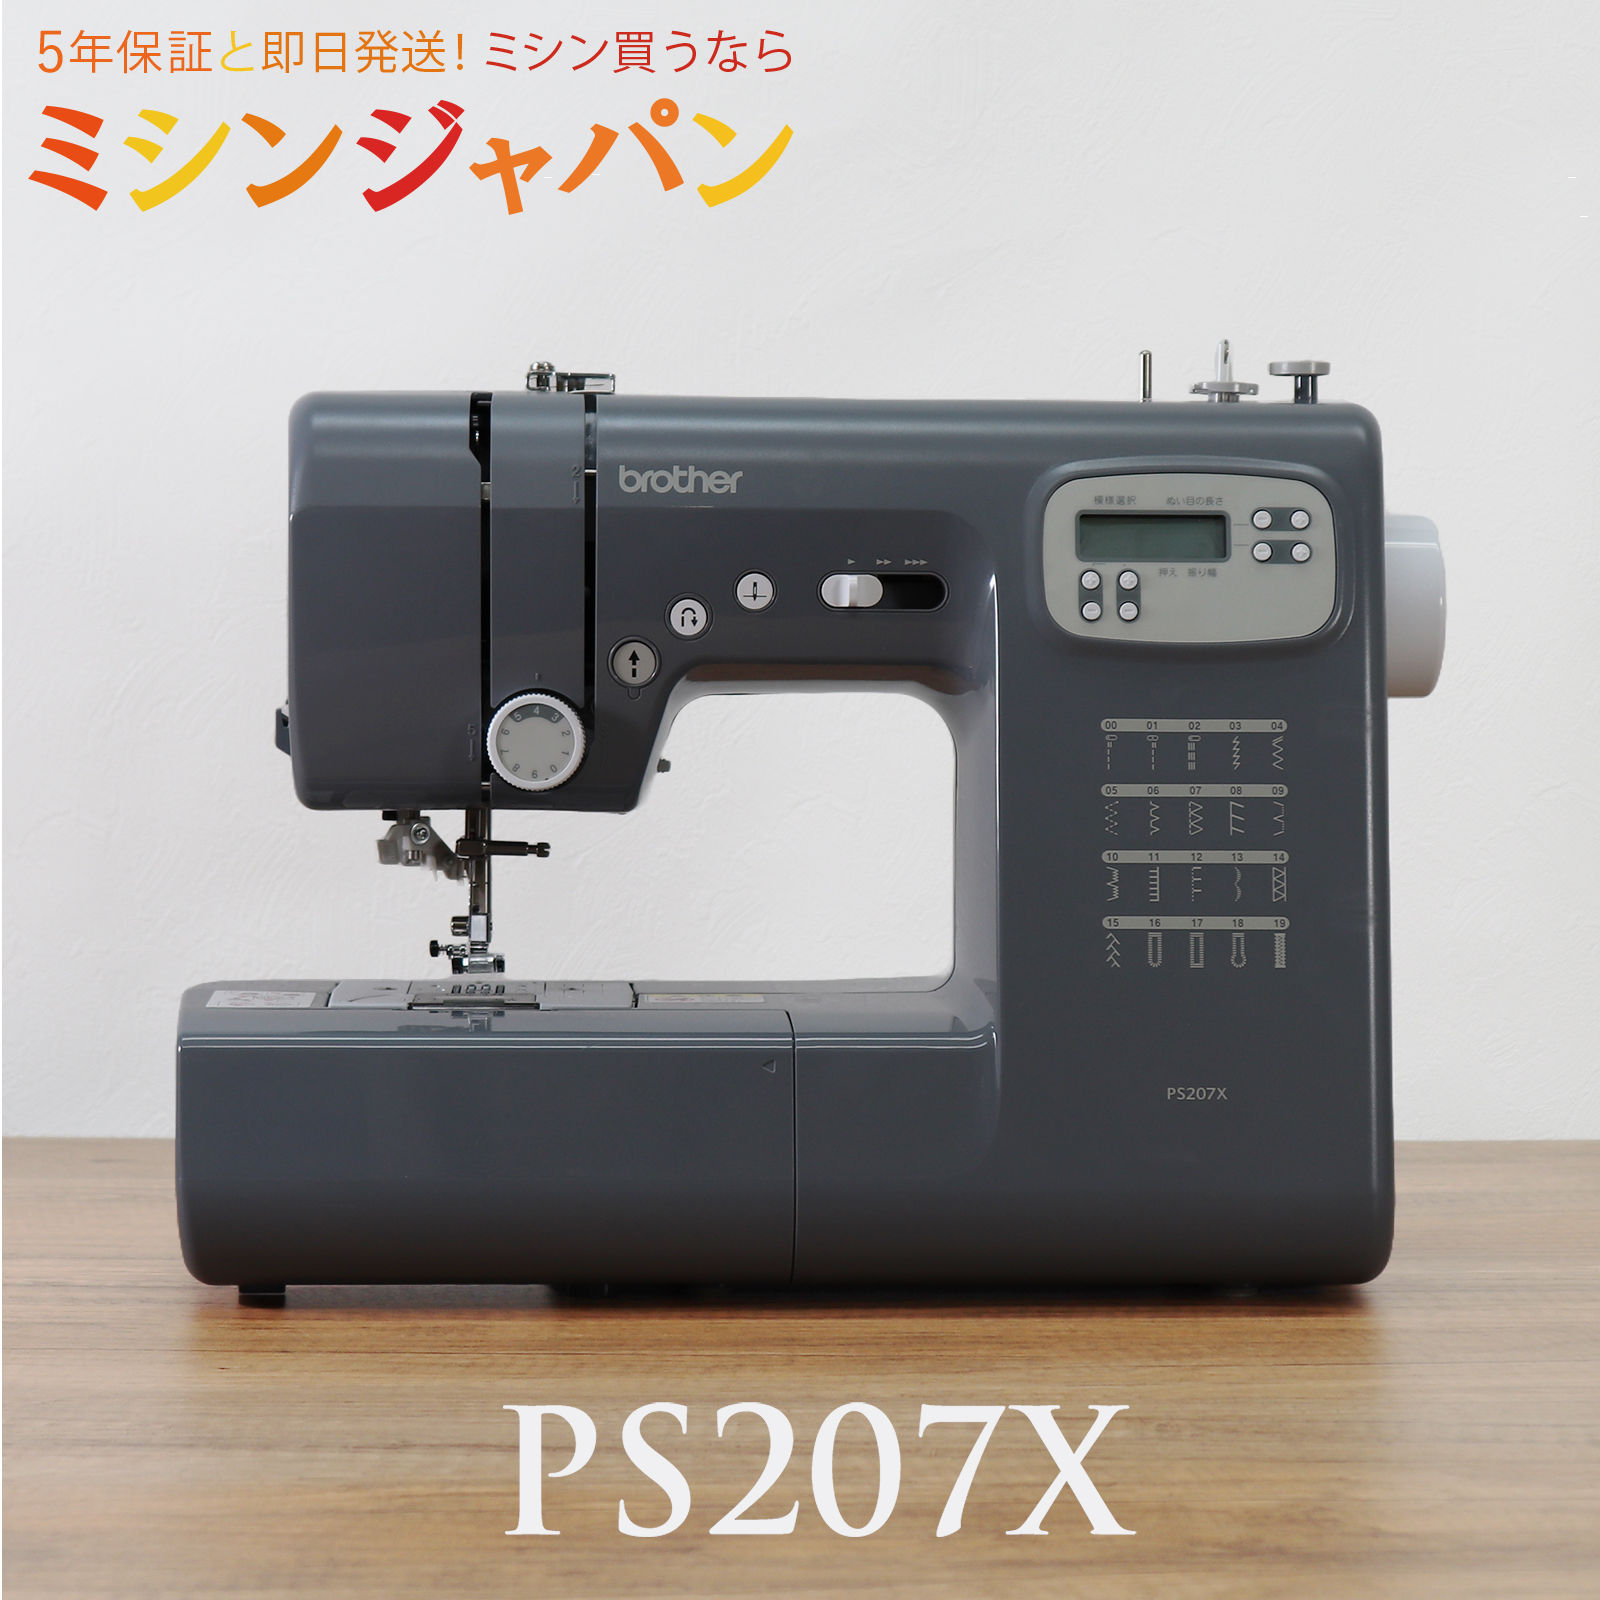 2500円CPあり☆／ PS207X ブラザー コンピューターミシン : 999-207xfc 